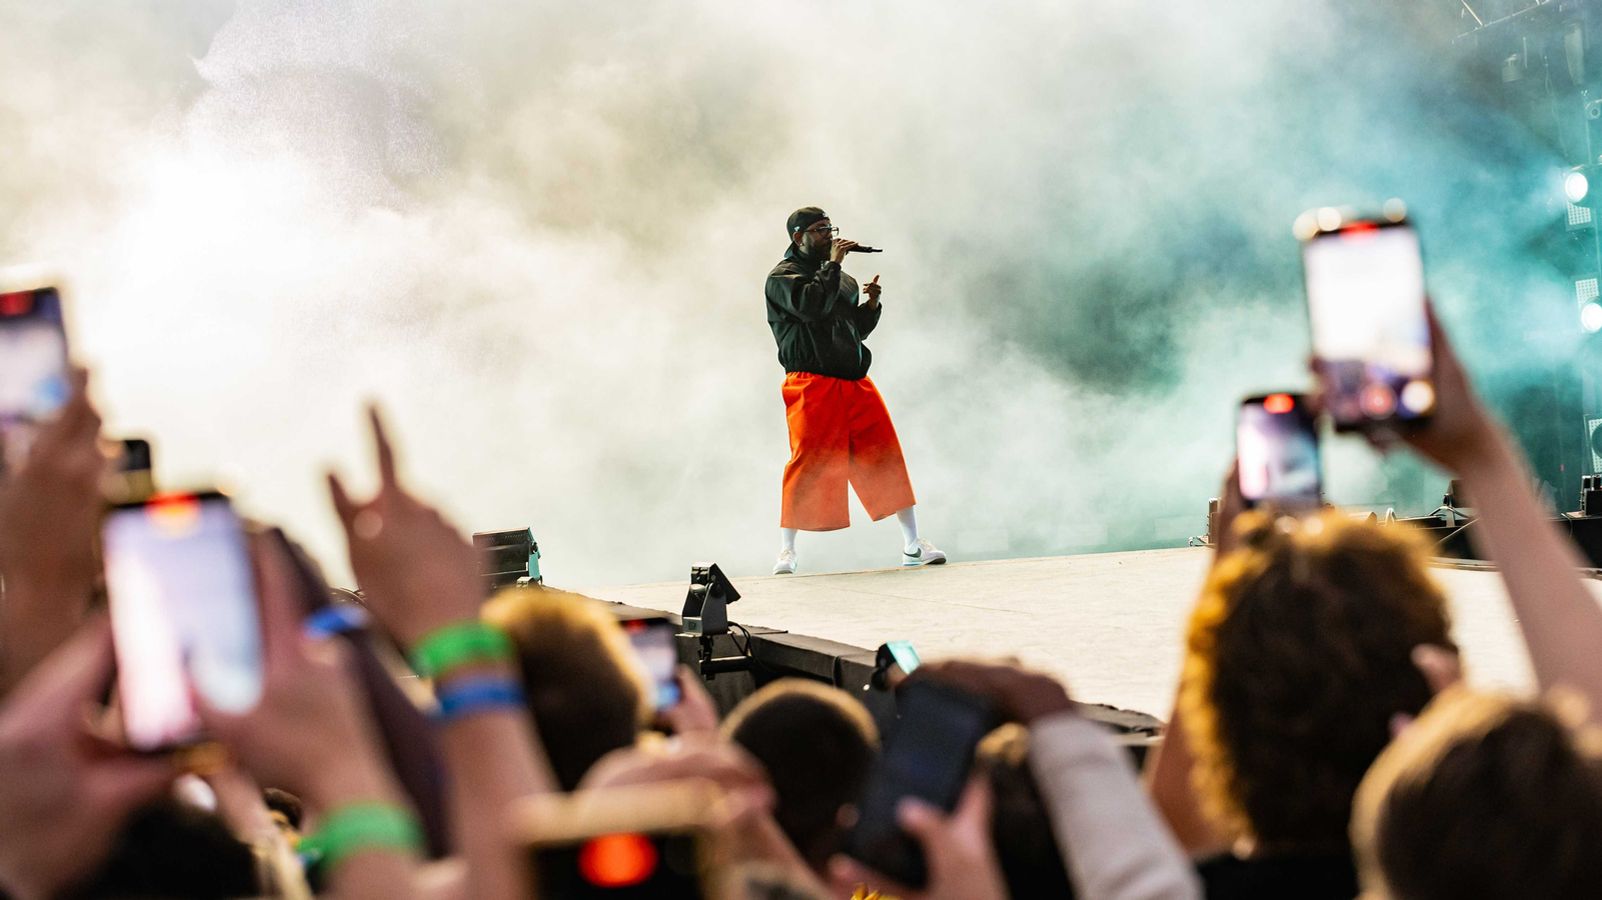 El festival de hip-hop “Rolling Loud Germany” ha sido suspendido temporalmente